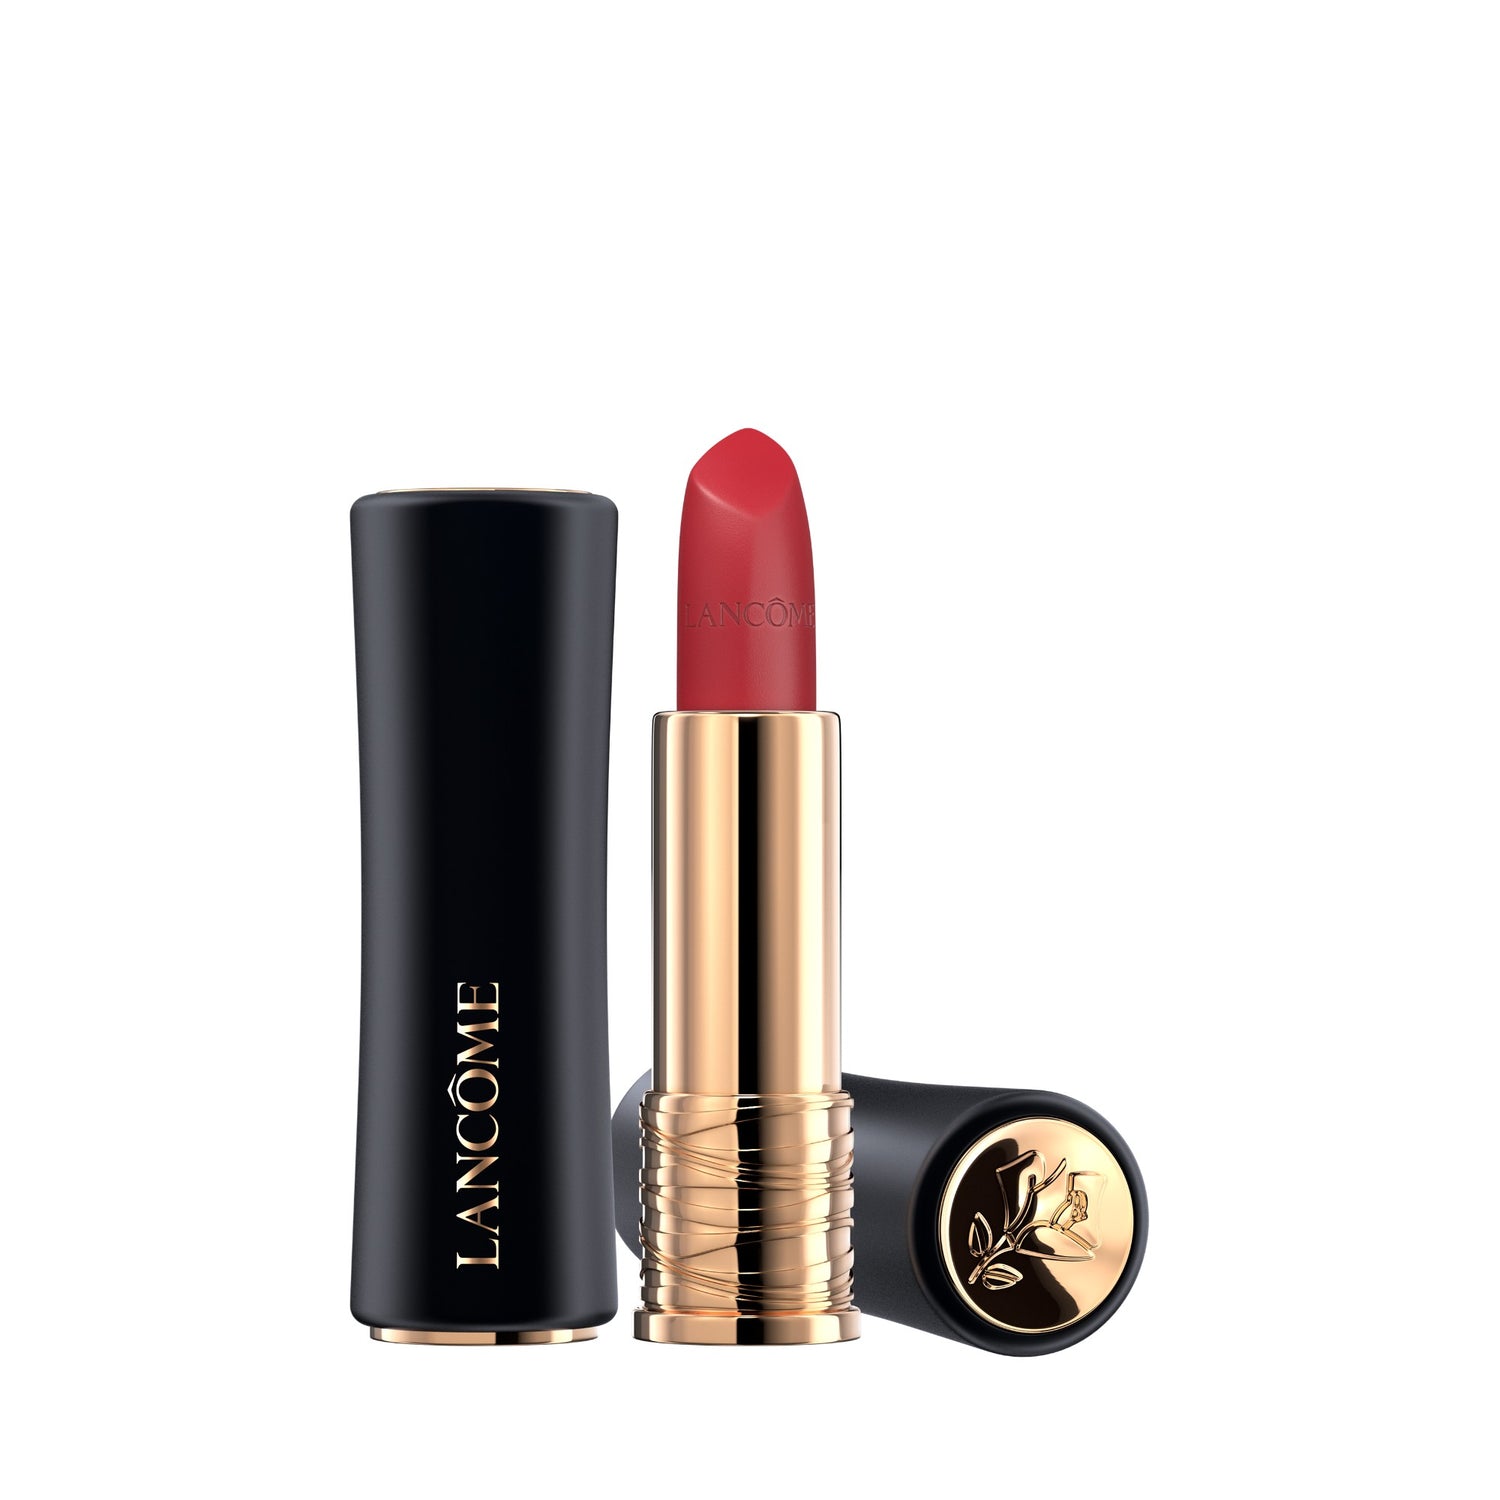 Lancome Absolu Rouge Cream Lipstick Fureur De Vivre Product